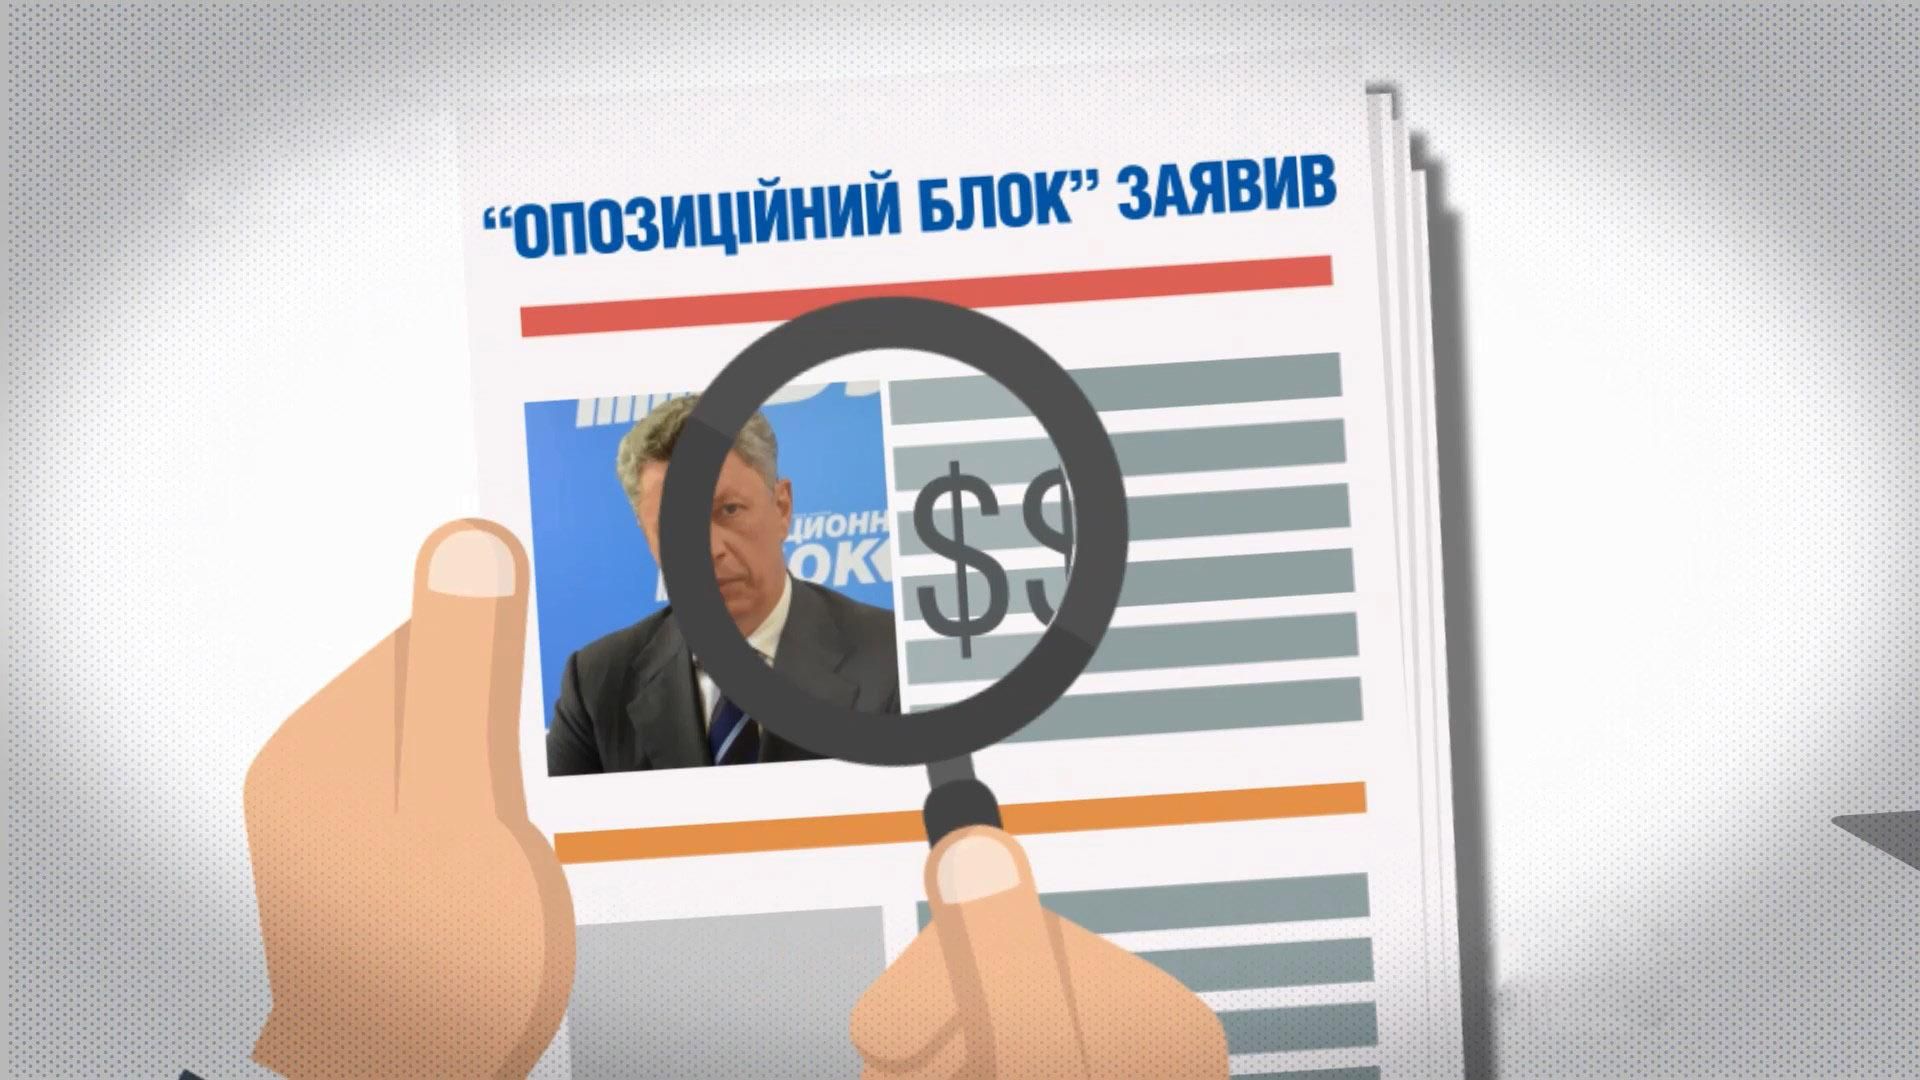 Джинса в Україні: які політичні сили найактивніше замовляють собі рекламу